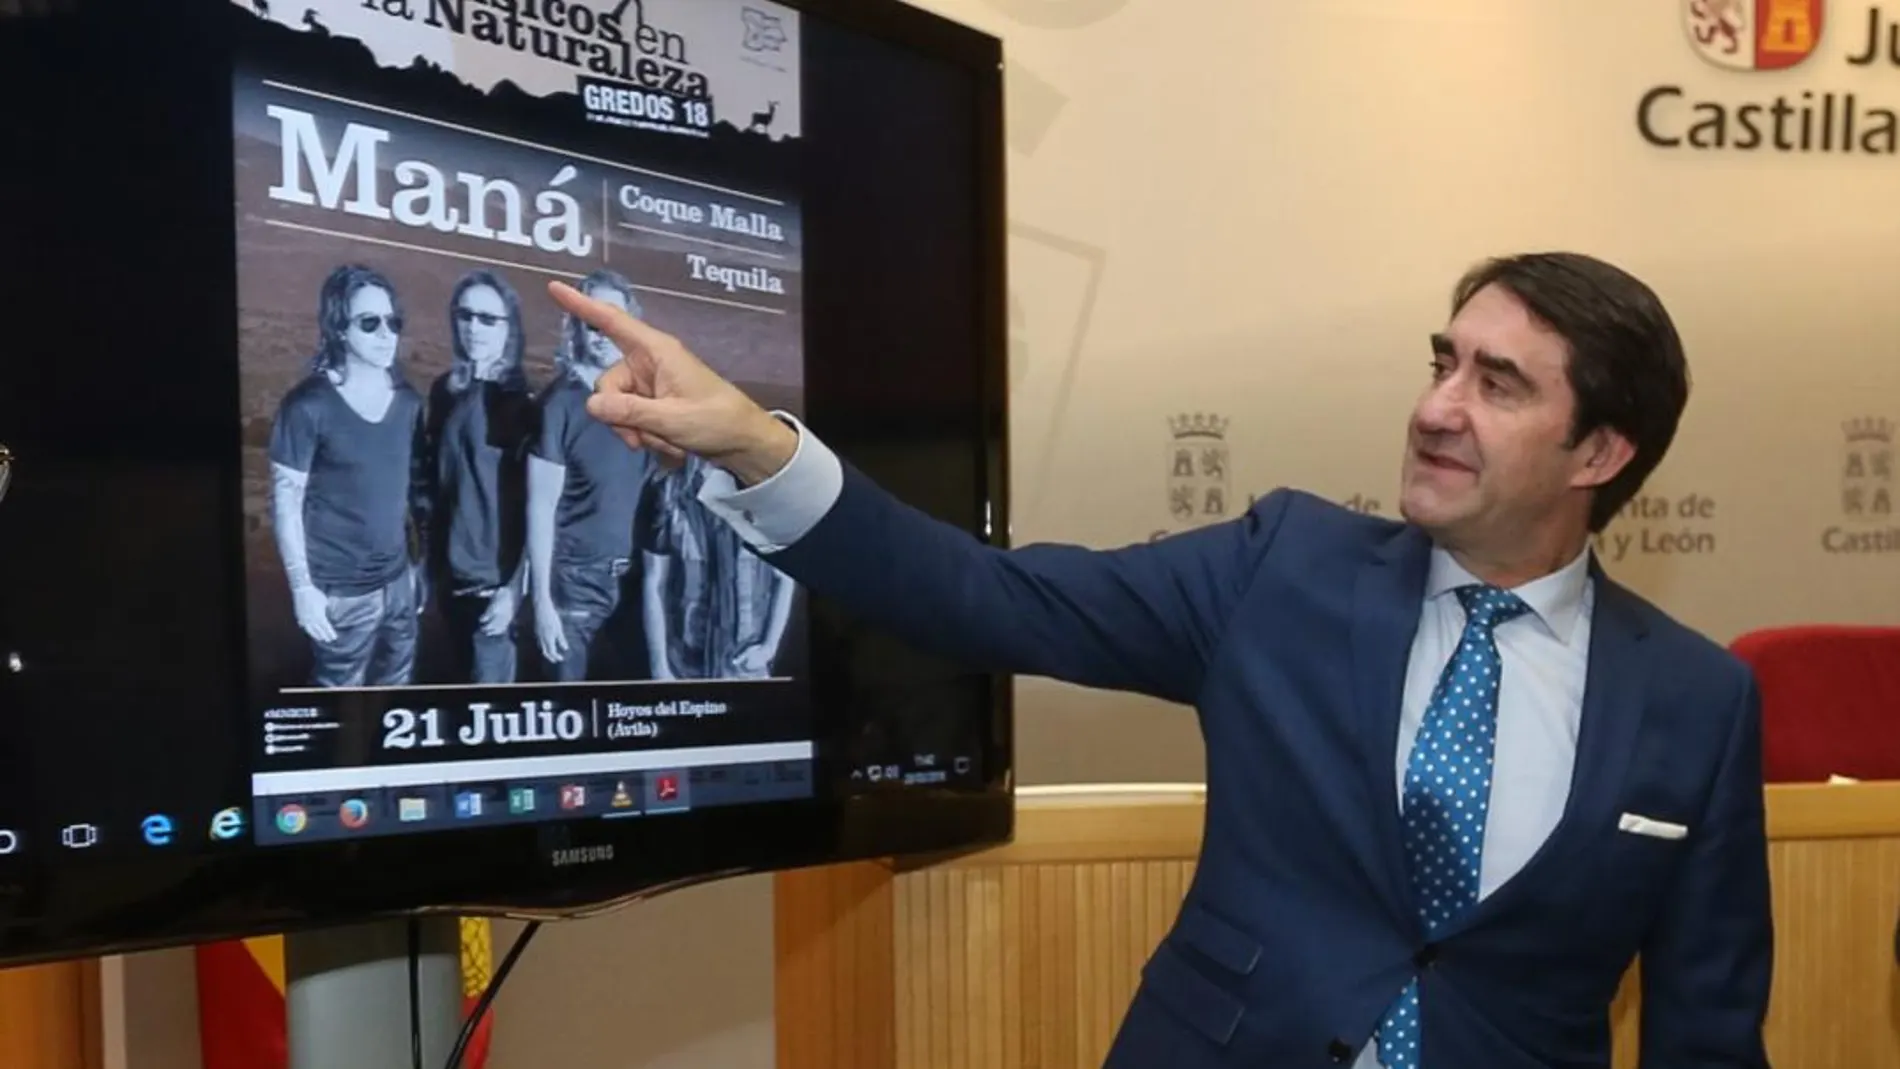 El consejero de Fomento y Medio Ambiente, Juan Carlos Suárez-Quiñones, presenta el cartel del festival Músicos en la Naturaleza